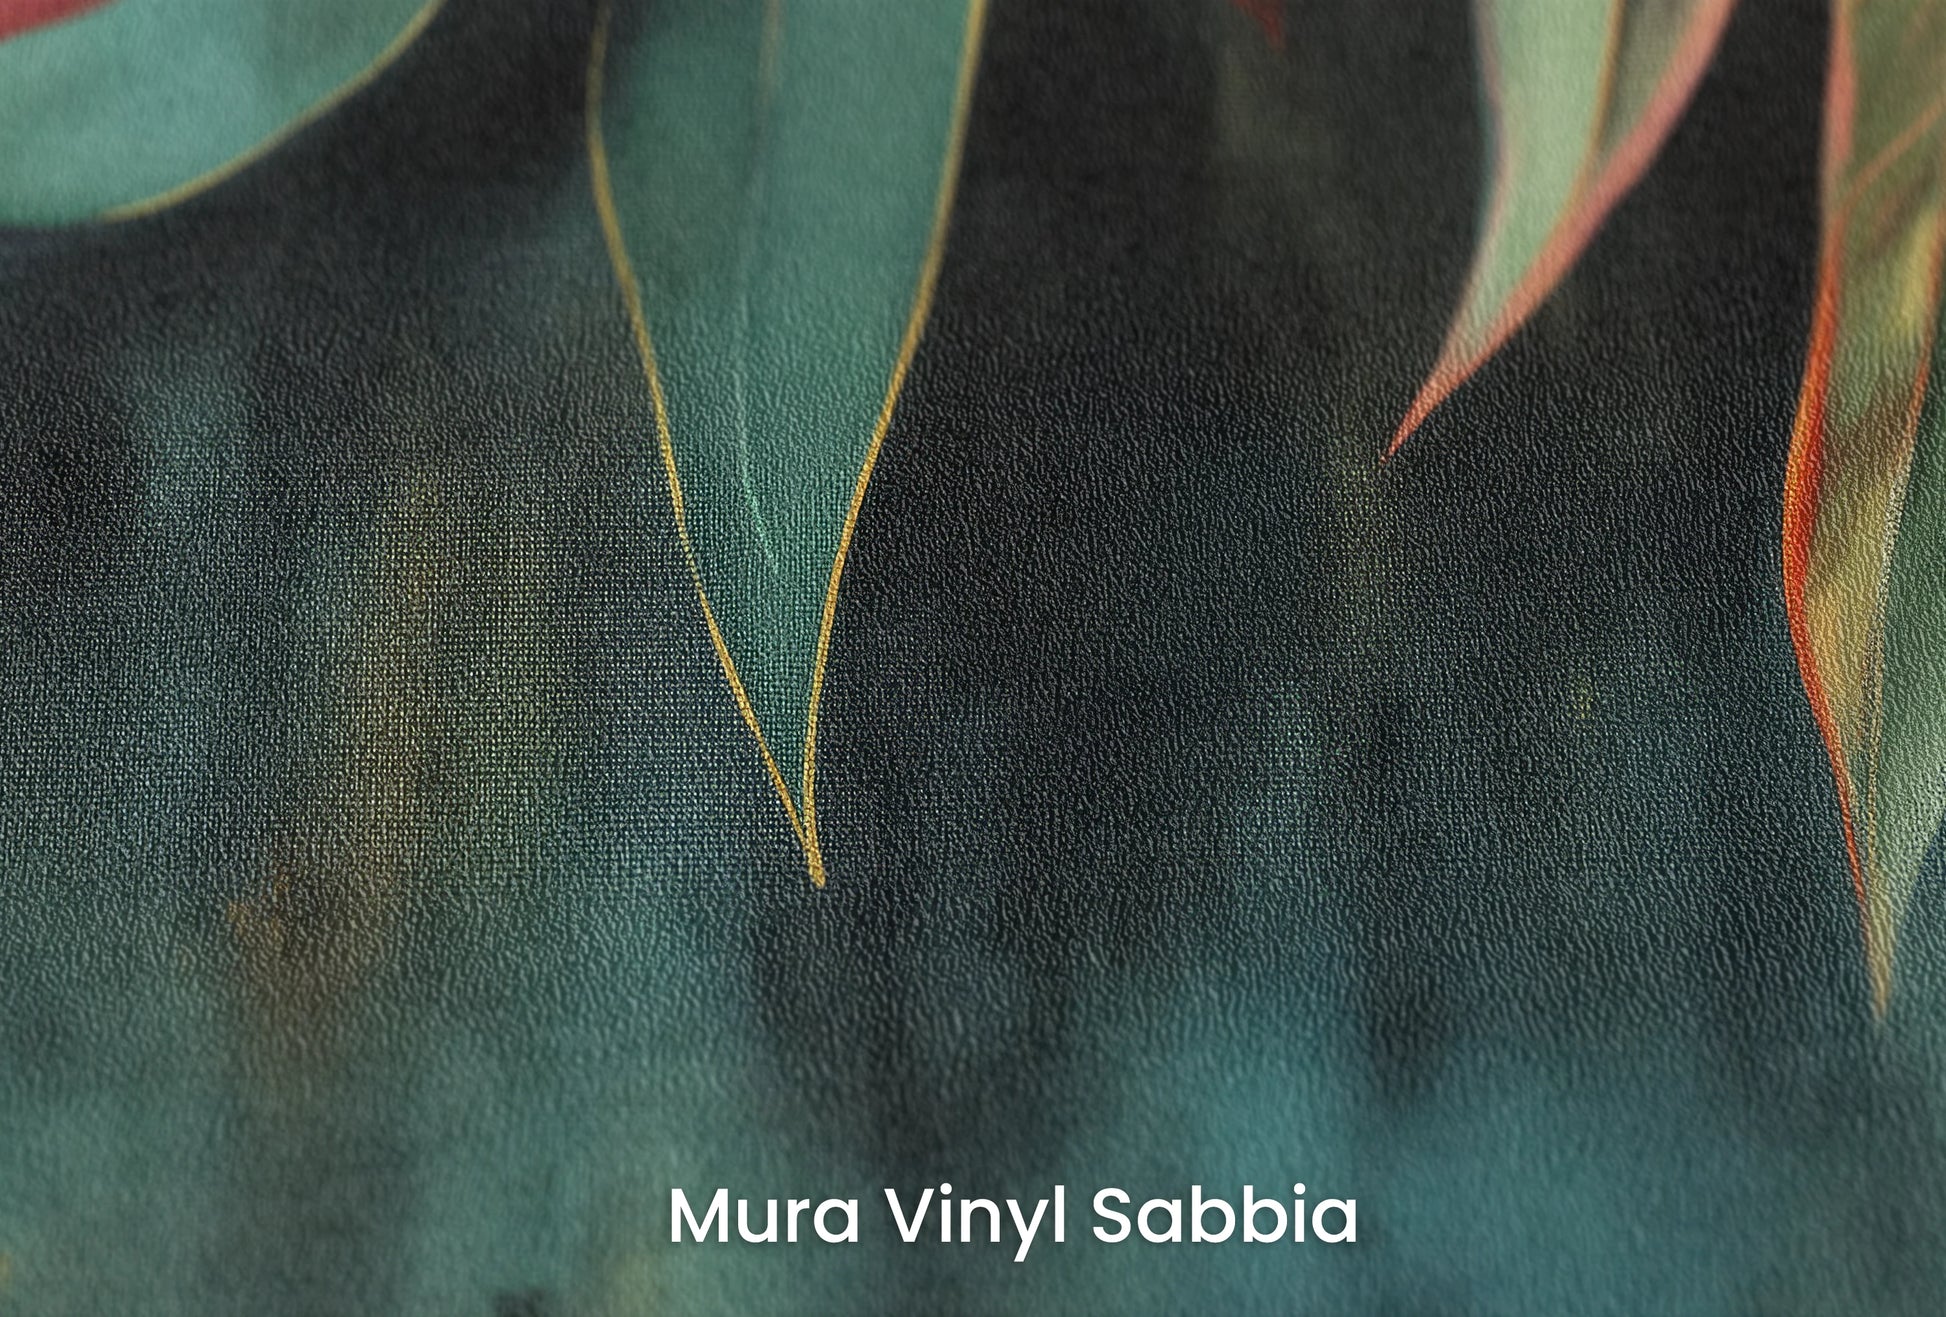 Zbliżenie na artystyczną fototapetę o nazwie Vibrant Fall na podłożu Mura Vinyl Sabbia struktura grubego ziarna piasku.